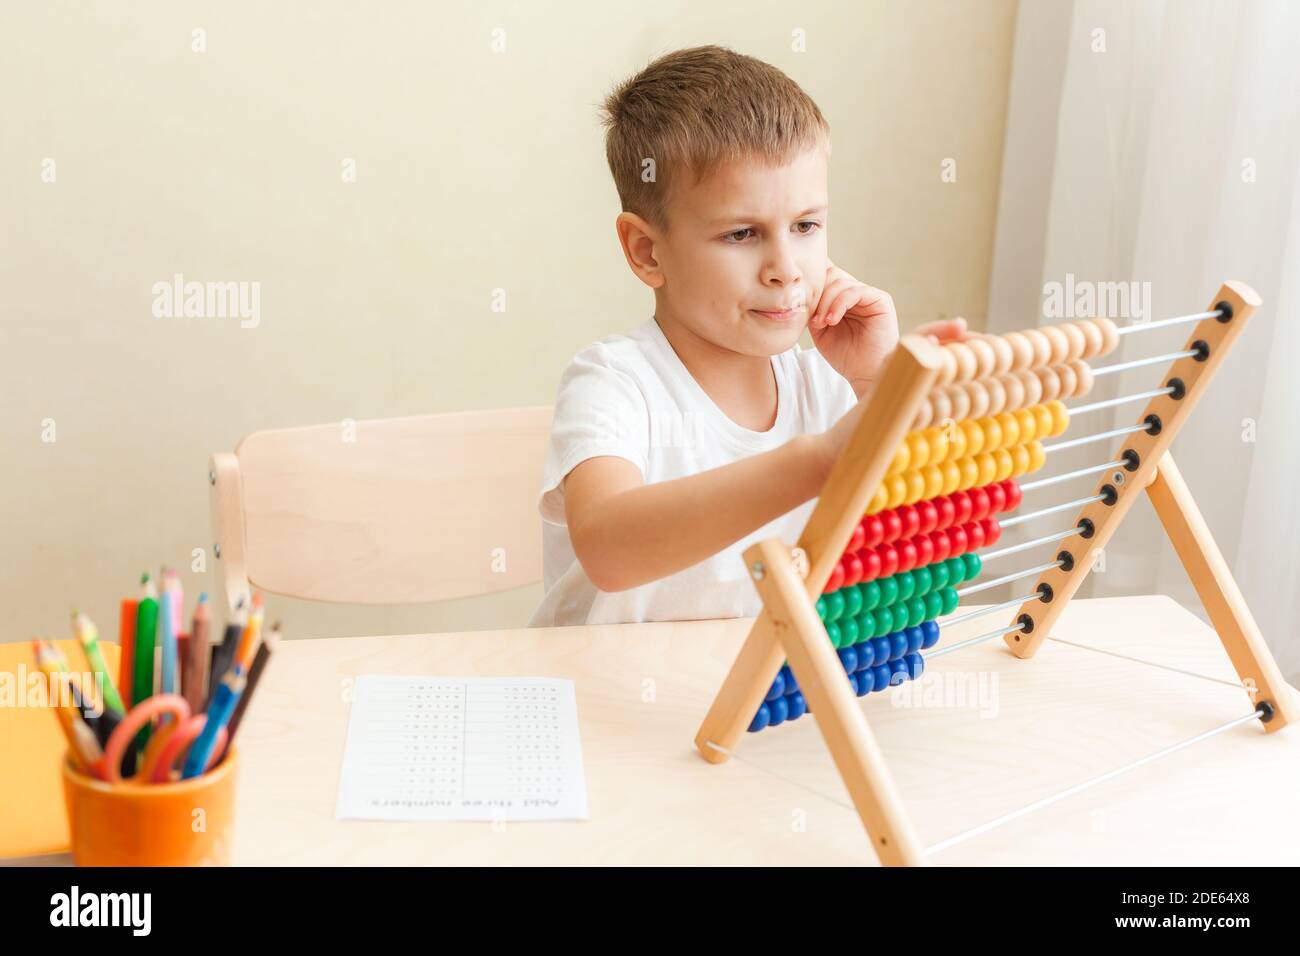 Kinder lösen mathematische Übungen. 7 Jahre alter Junge, der Mathematik-Unterricht macht, sitzt am Schreibtisch in seinem Zimmer. Stockfoto